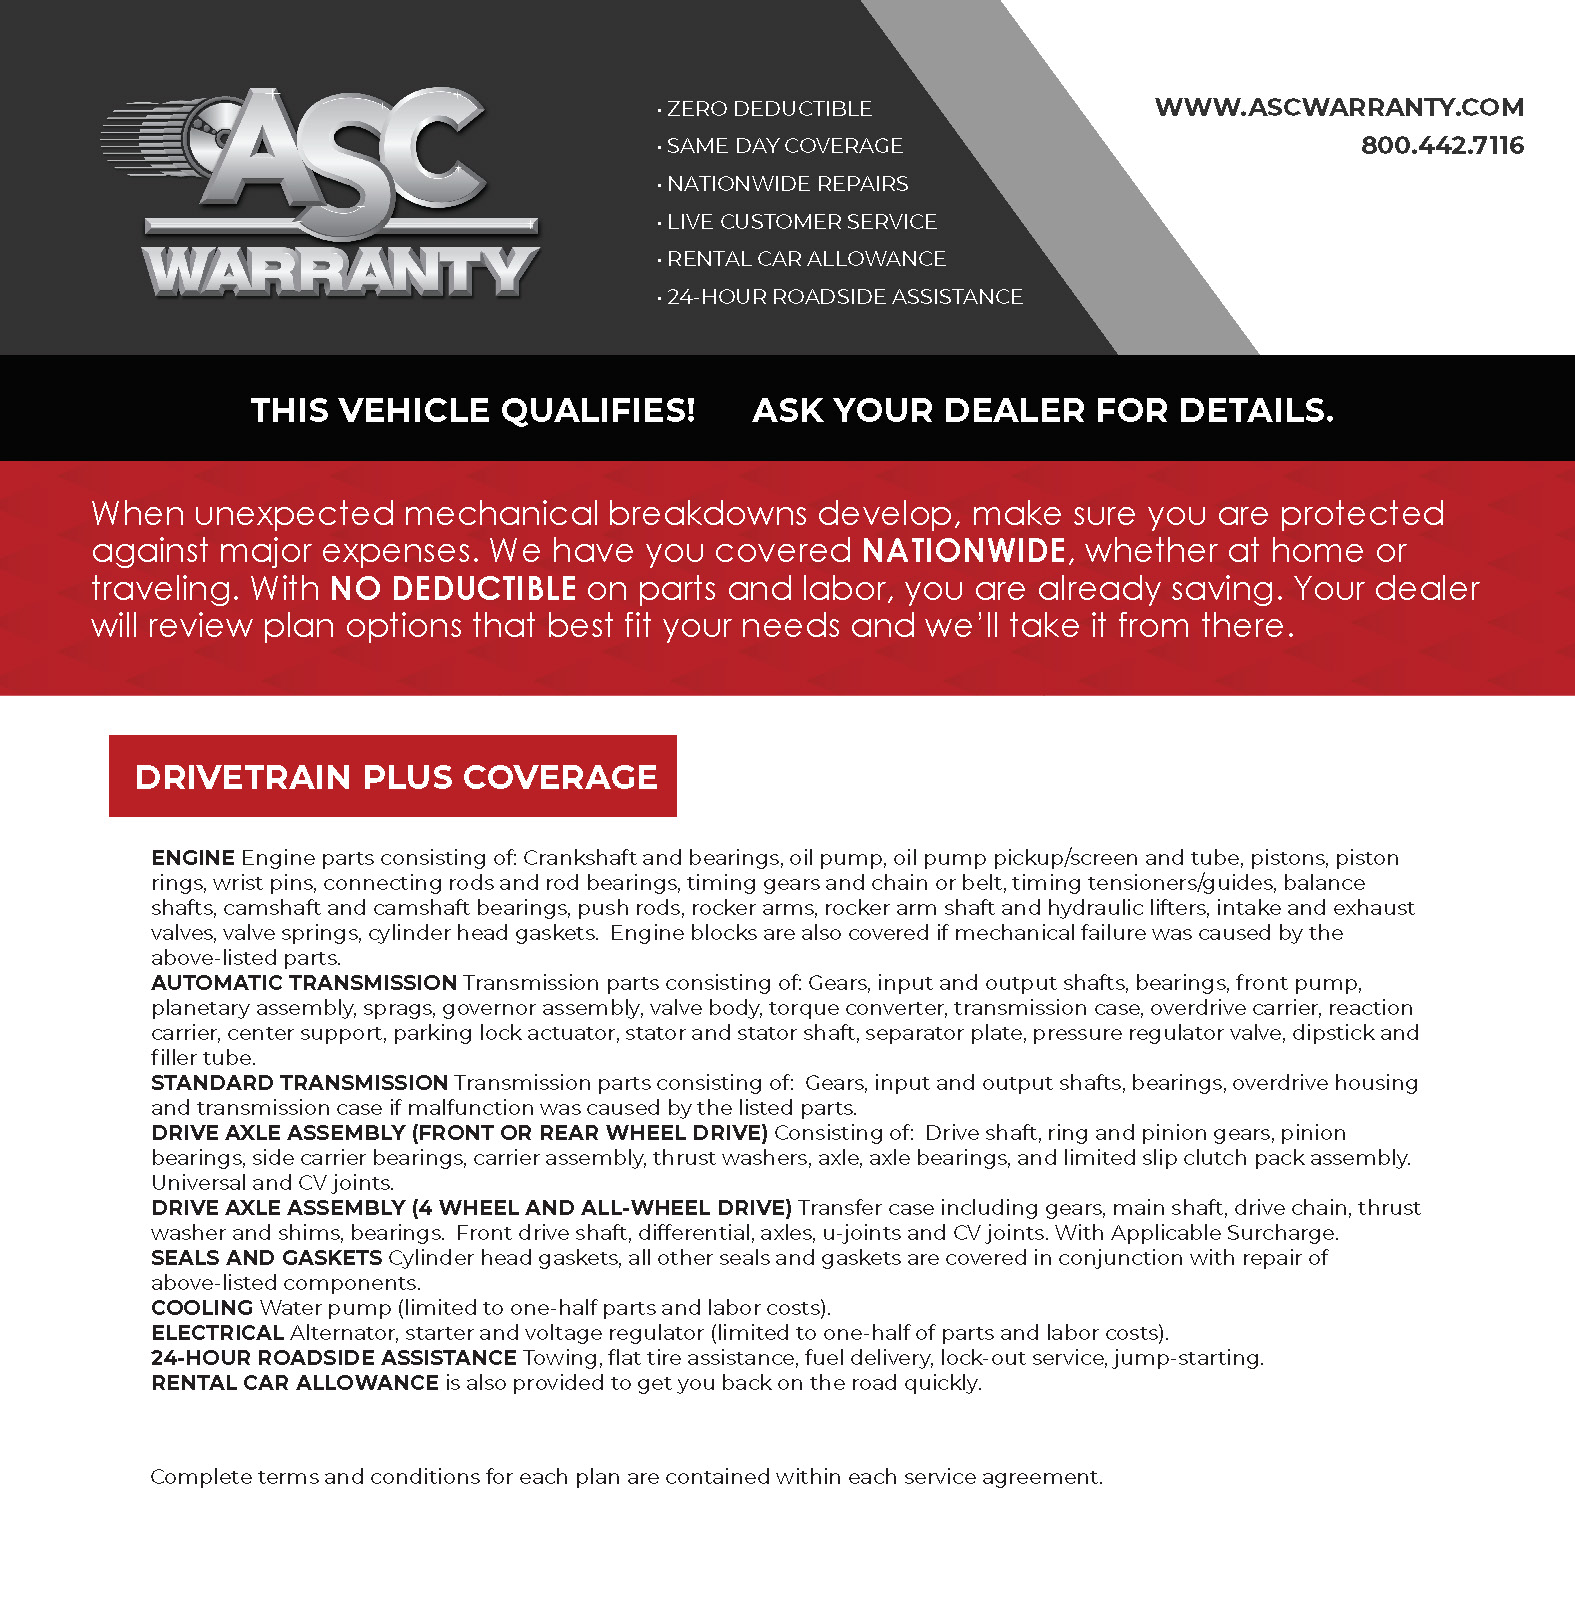 ASC warranty image